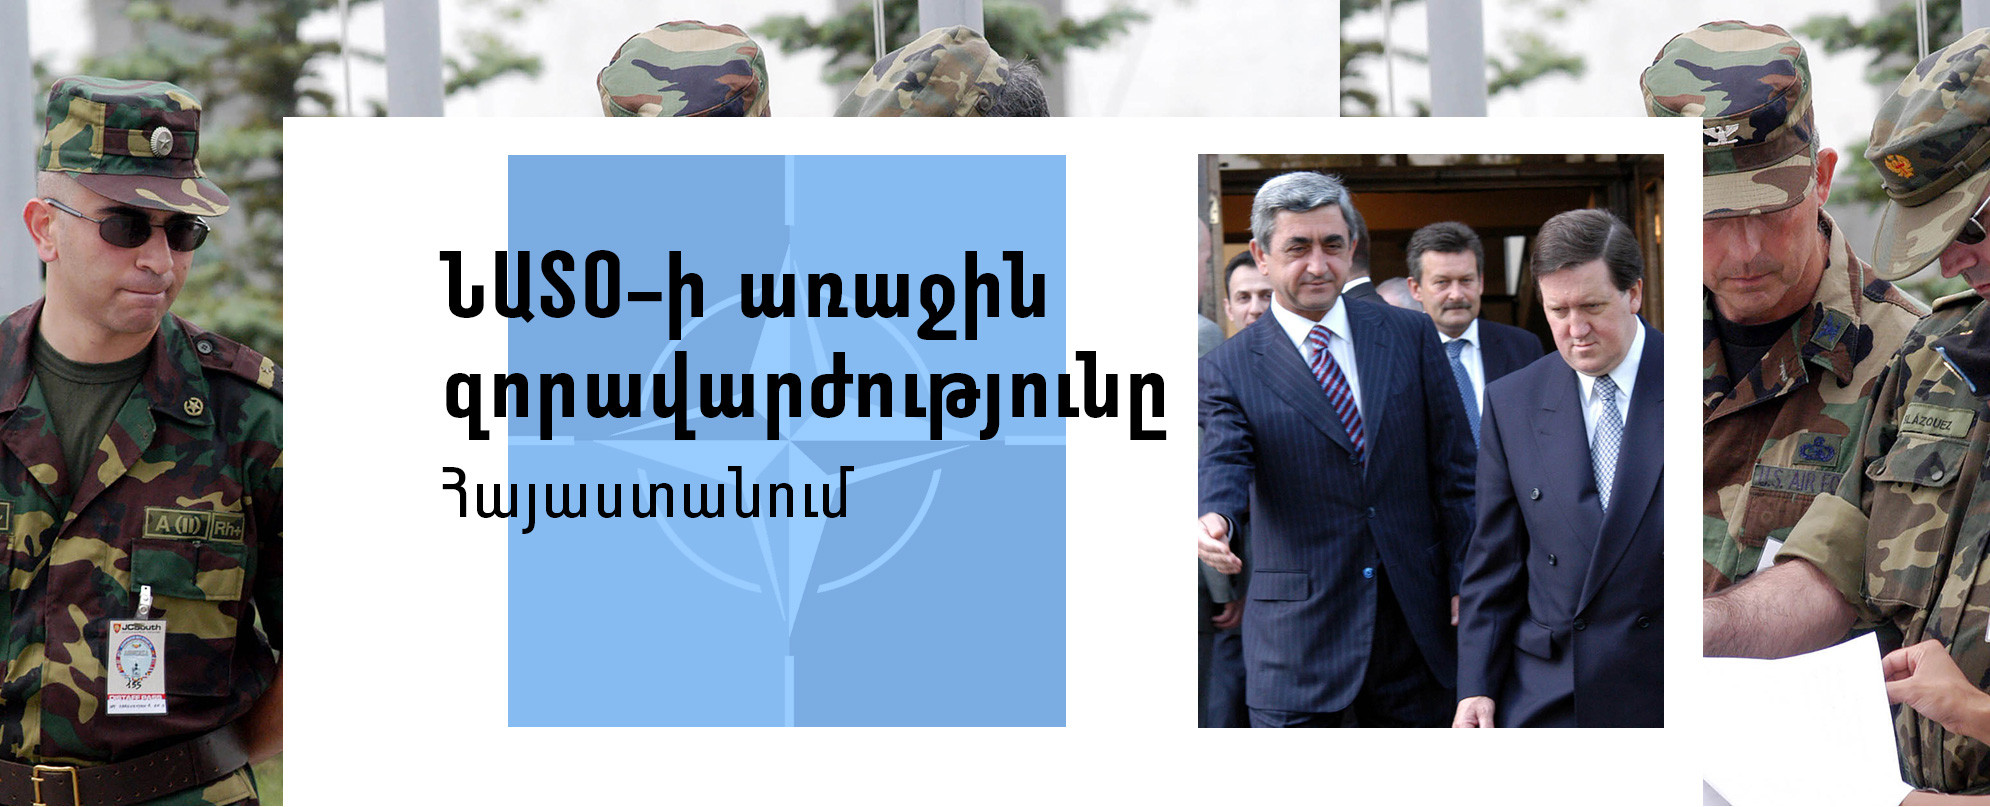 ՆԱՏՕ-ի առաջին զորավարժությունը Հայաստանում